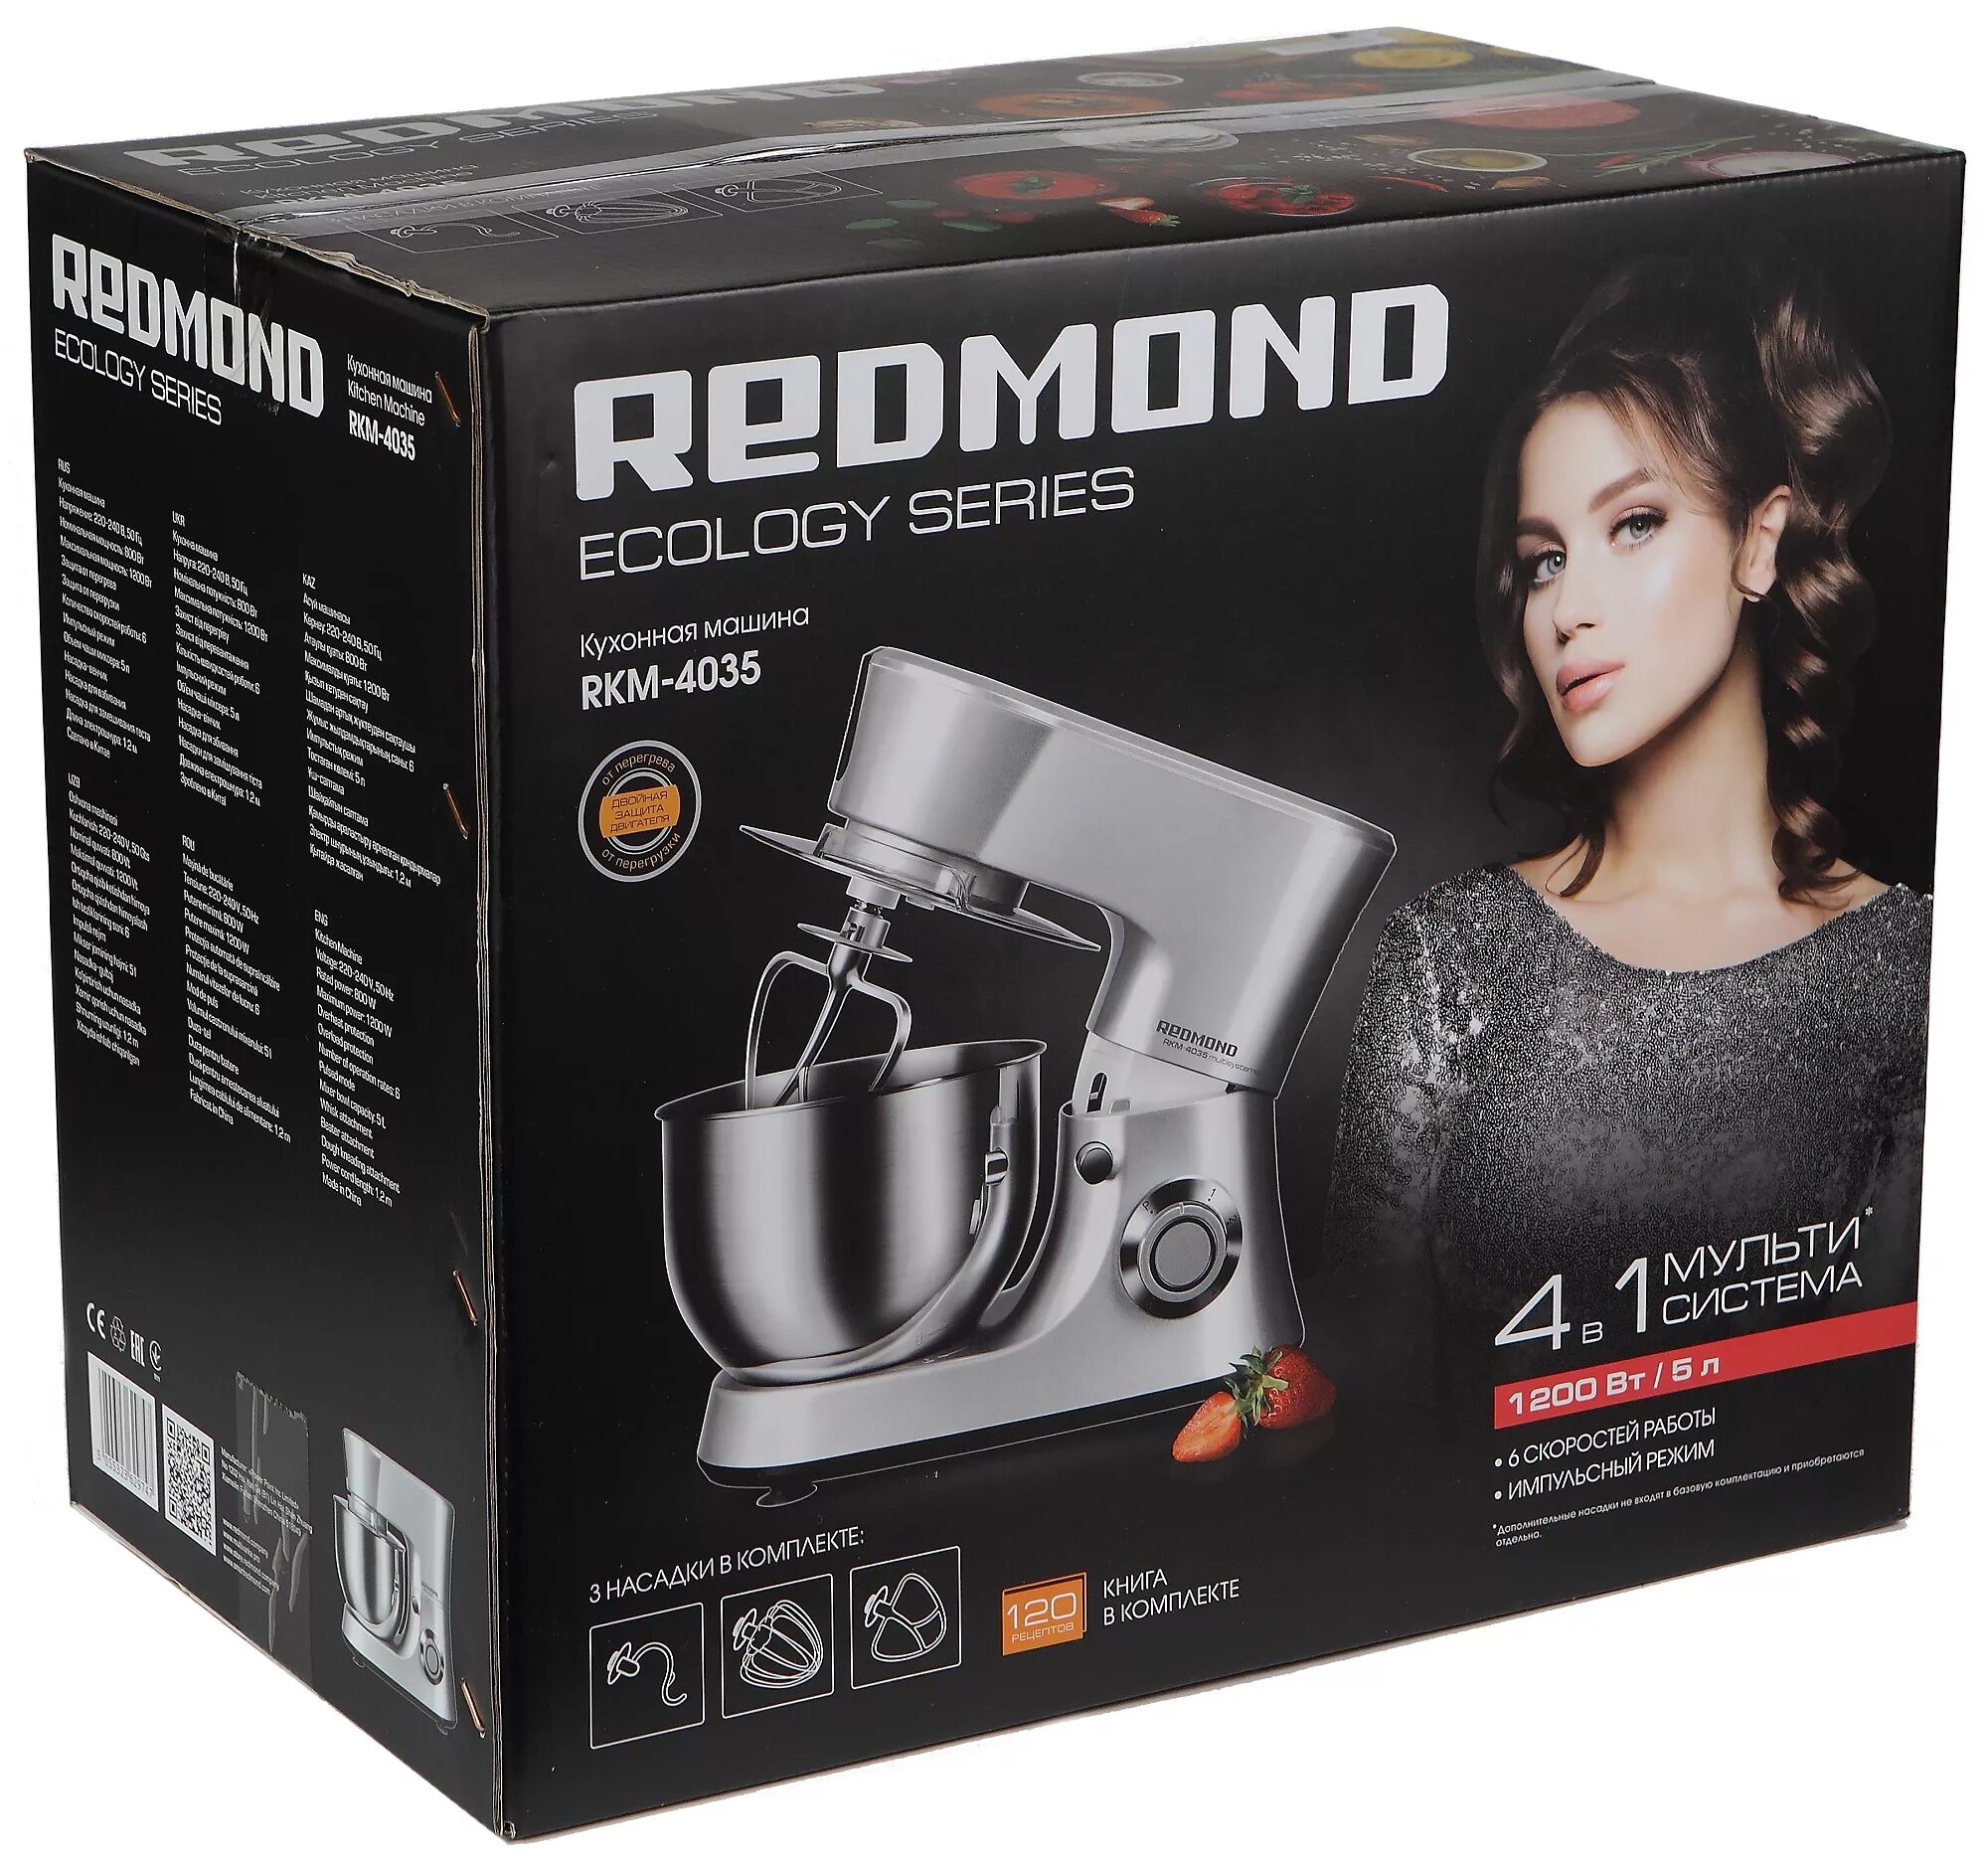 Кухонная машина Redmond RKM-4035. Планетарный миксер редмонд RKM-4035. Планетарий миксер Ремдон. Redmond RFM-5318. Миксер планетарный редмонд купить